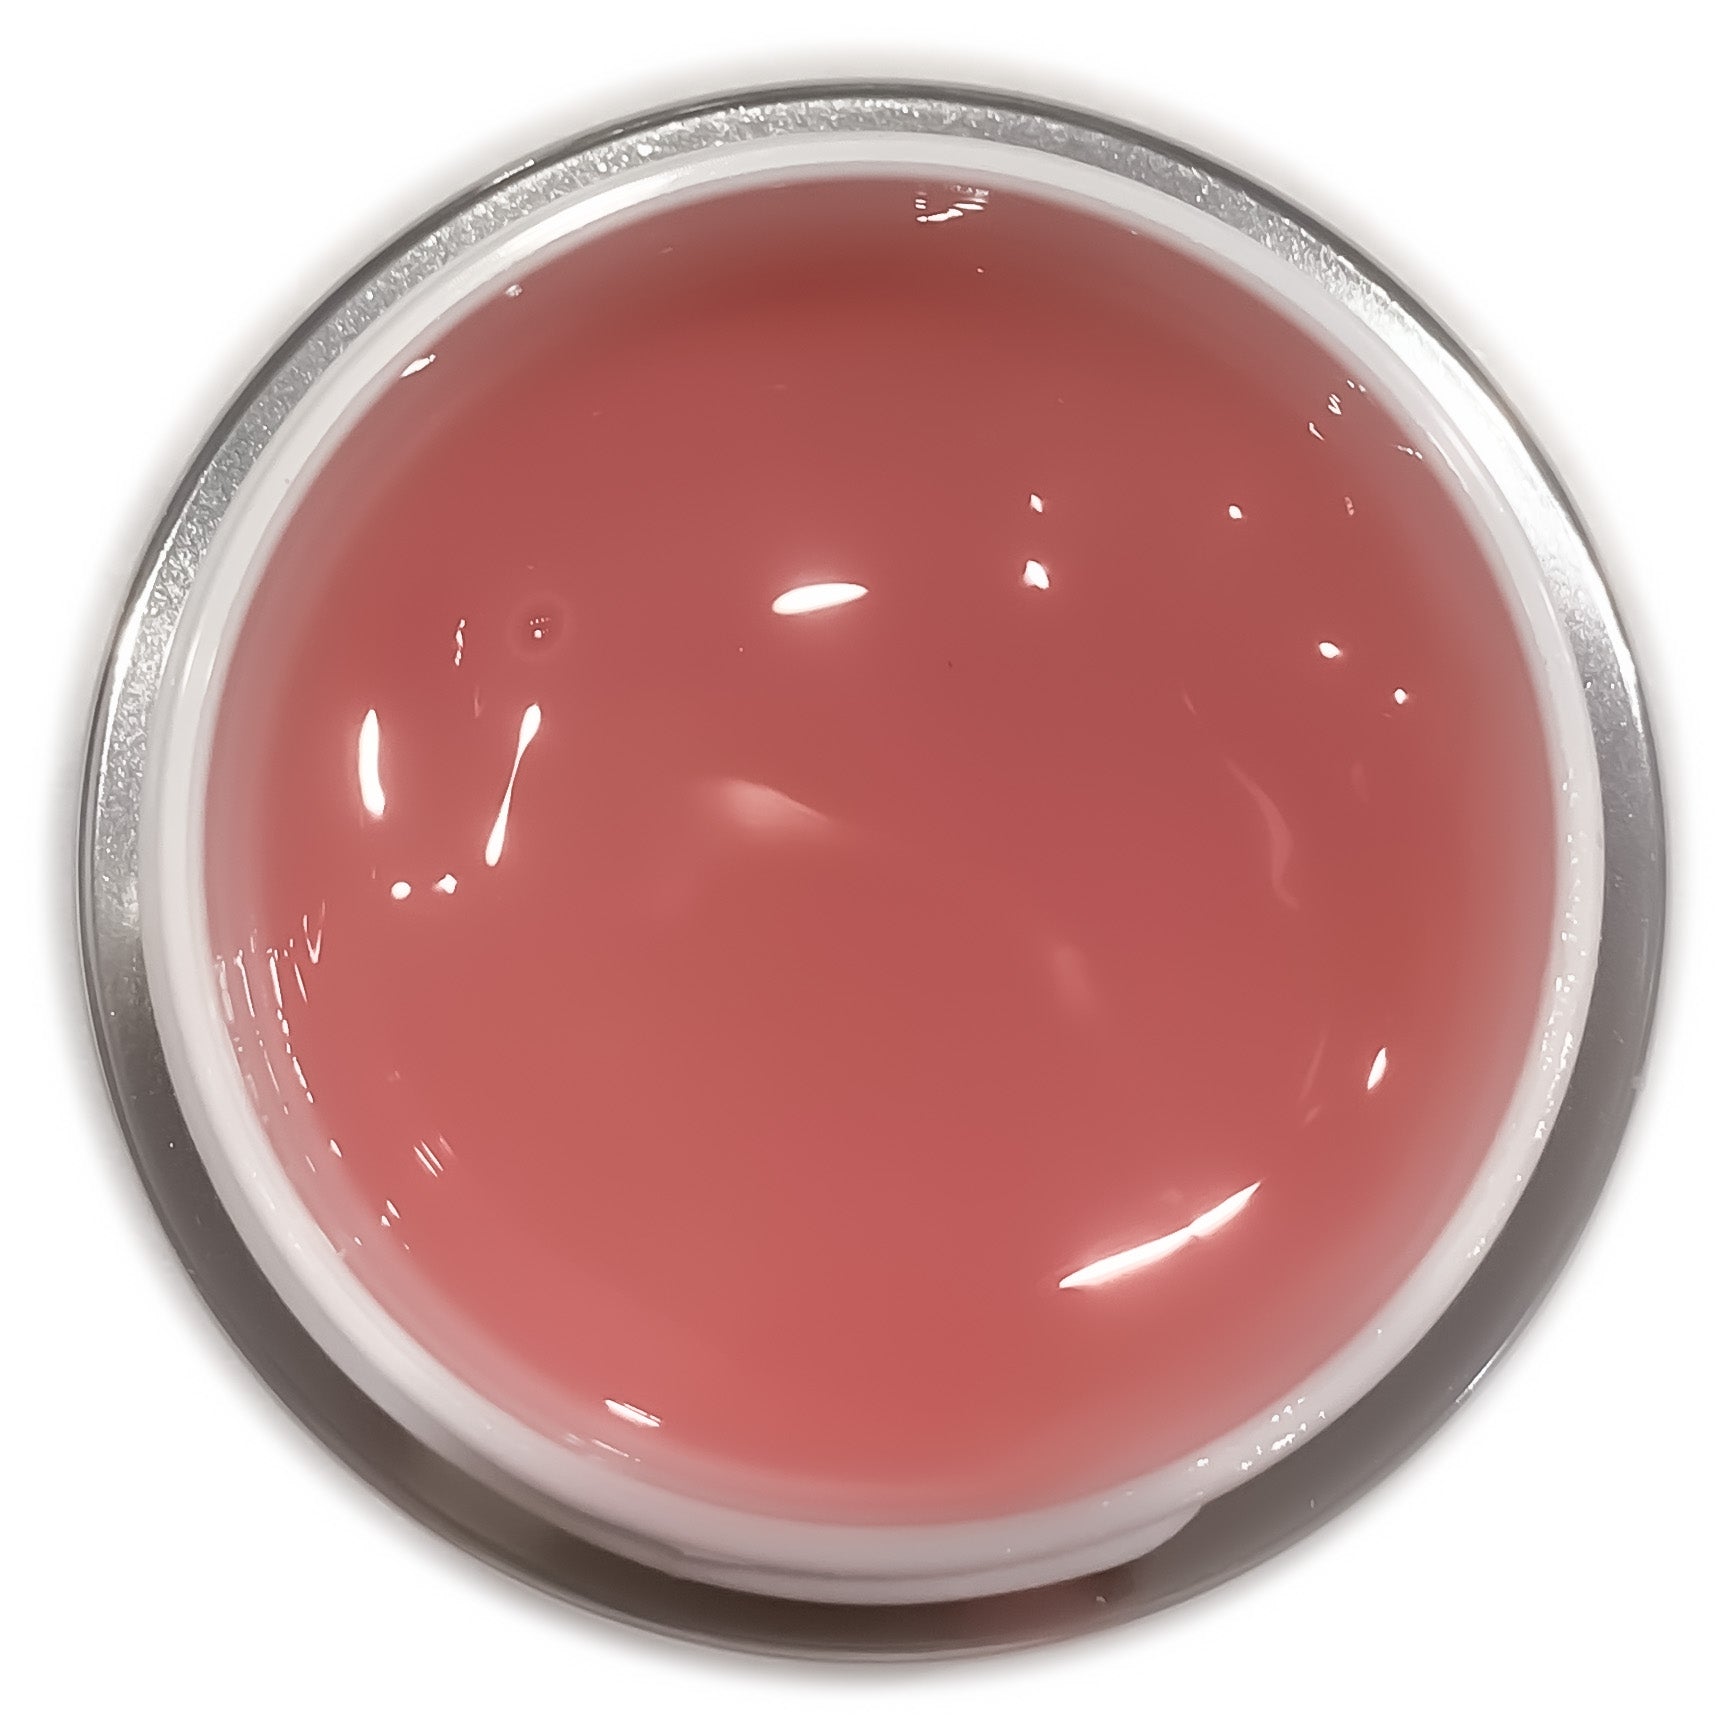 Emperio Cosmetics LED/ UV Aufbaugel "MASTER Constructor" -pink- 30g. Ein leicht pink eingefärbtes, semi-transparentes und standfestes Aufbaugel. Dieses Gel lässt sich gut pinchen, behält beim Verarbeiten die Form und eignet sich sehr gut als Schablonengel, zum modellieren von kurzen bis sehr langen Nägeln und exklusiven Nagelformen.